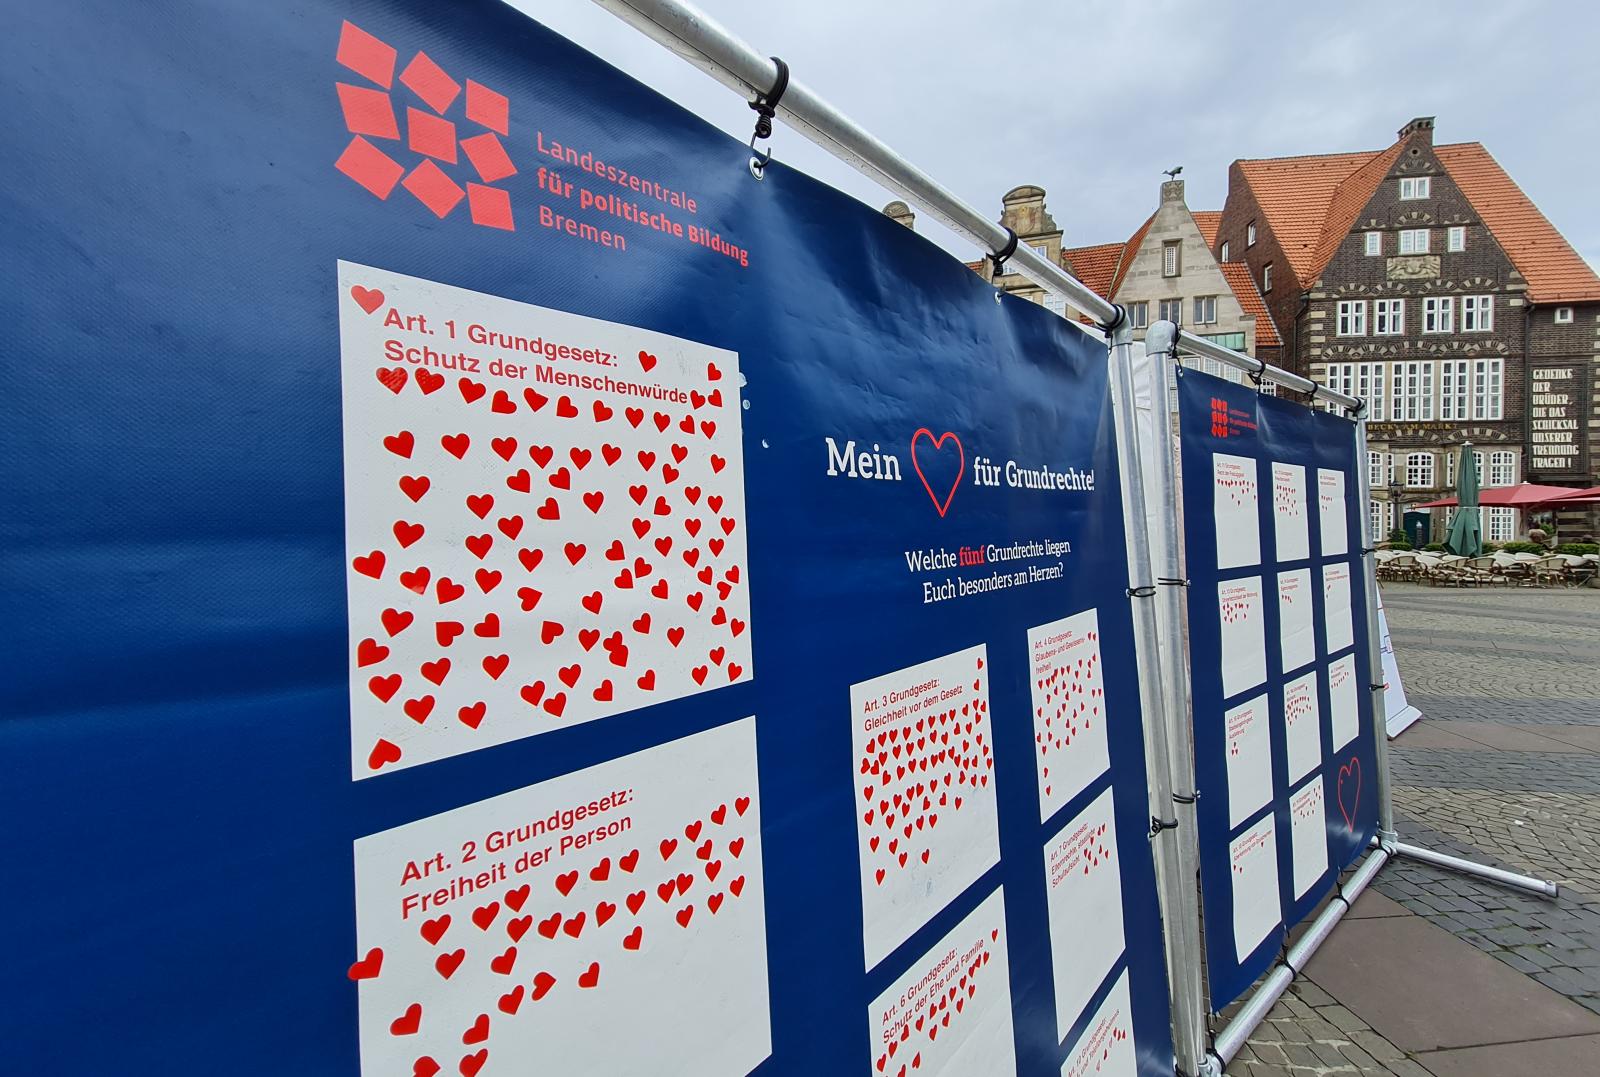 Das Projekt "Mein Herz für Grundrechte" auf dem Bremer Marktplatz 